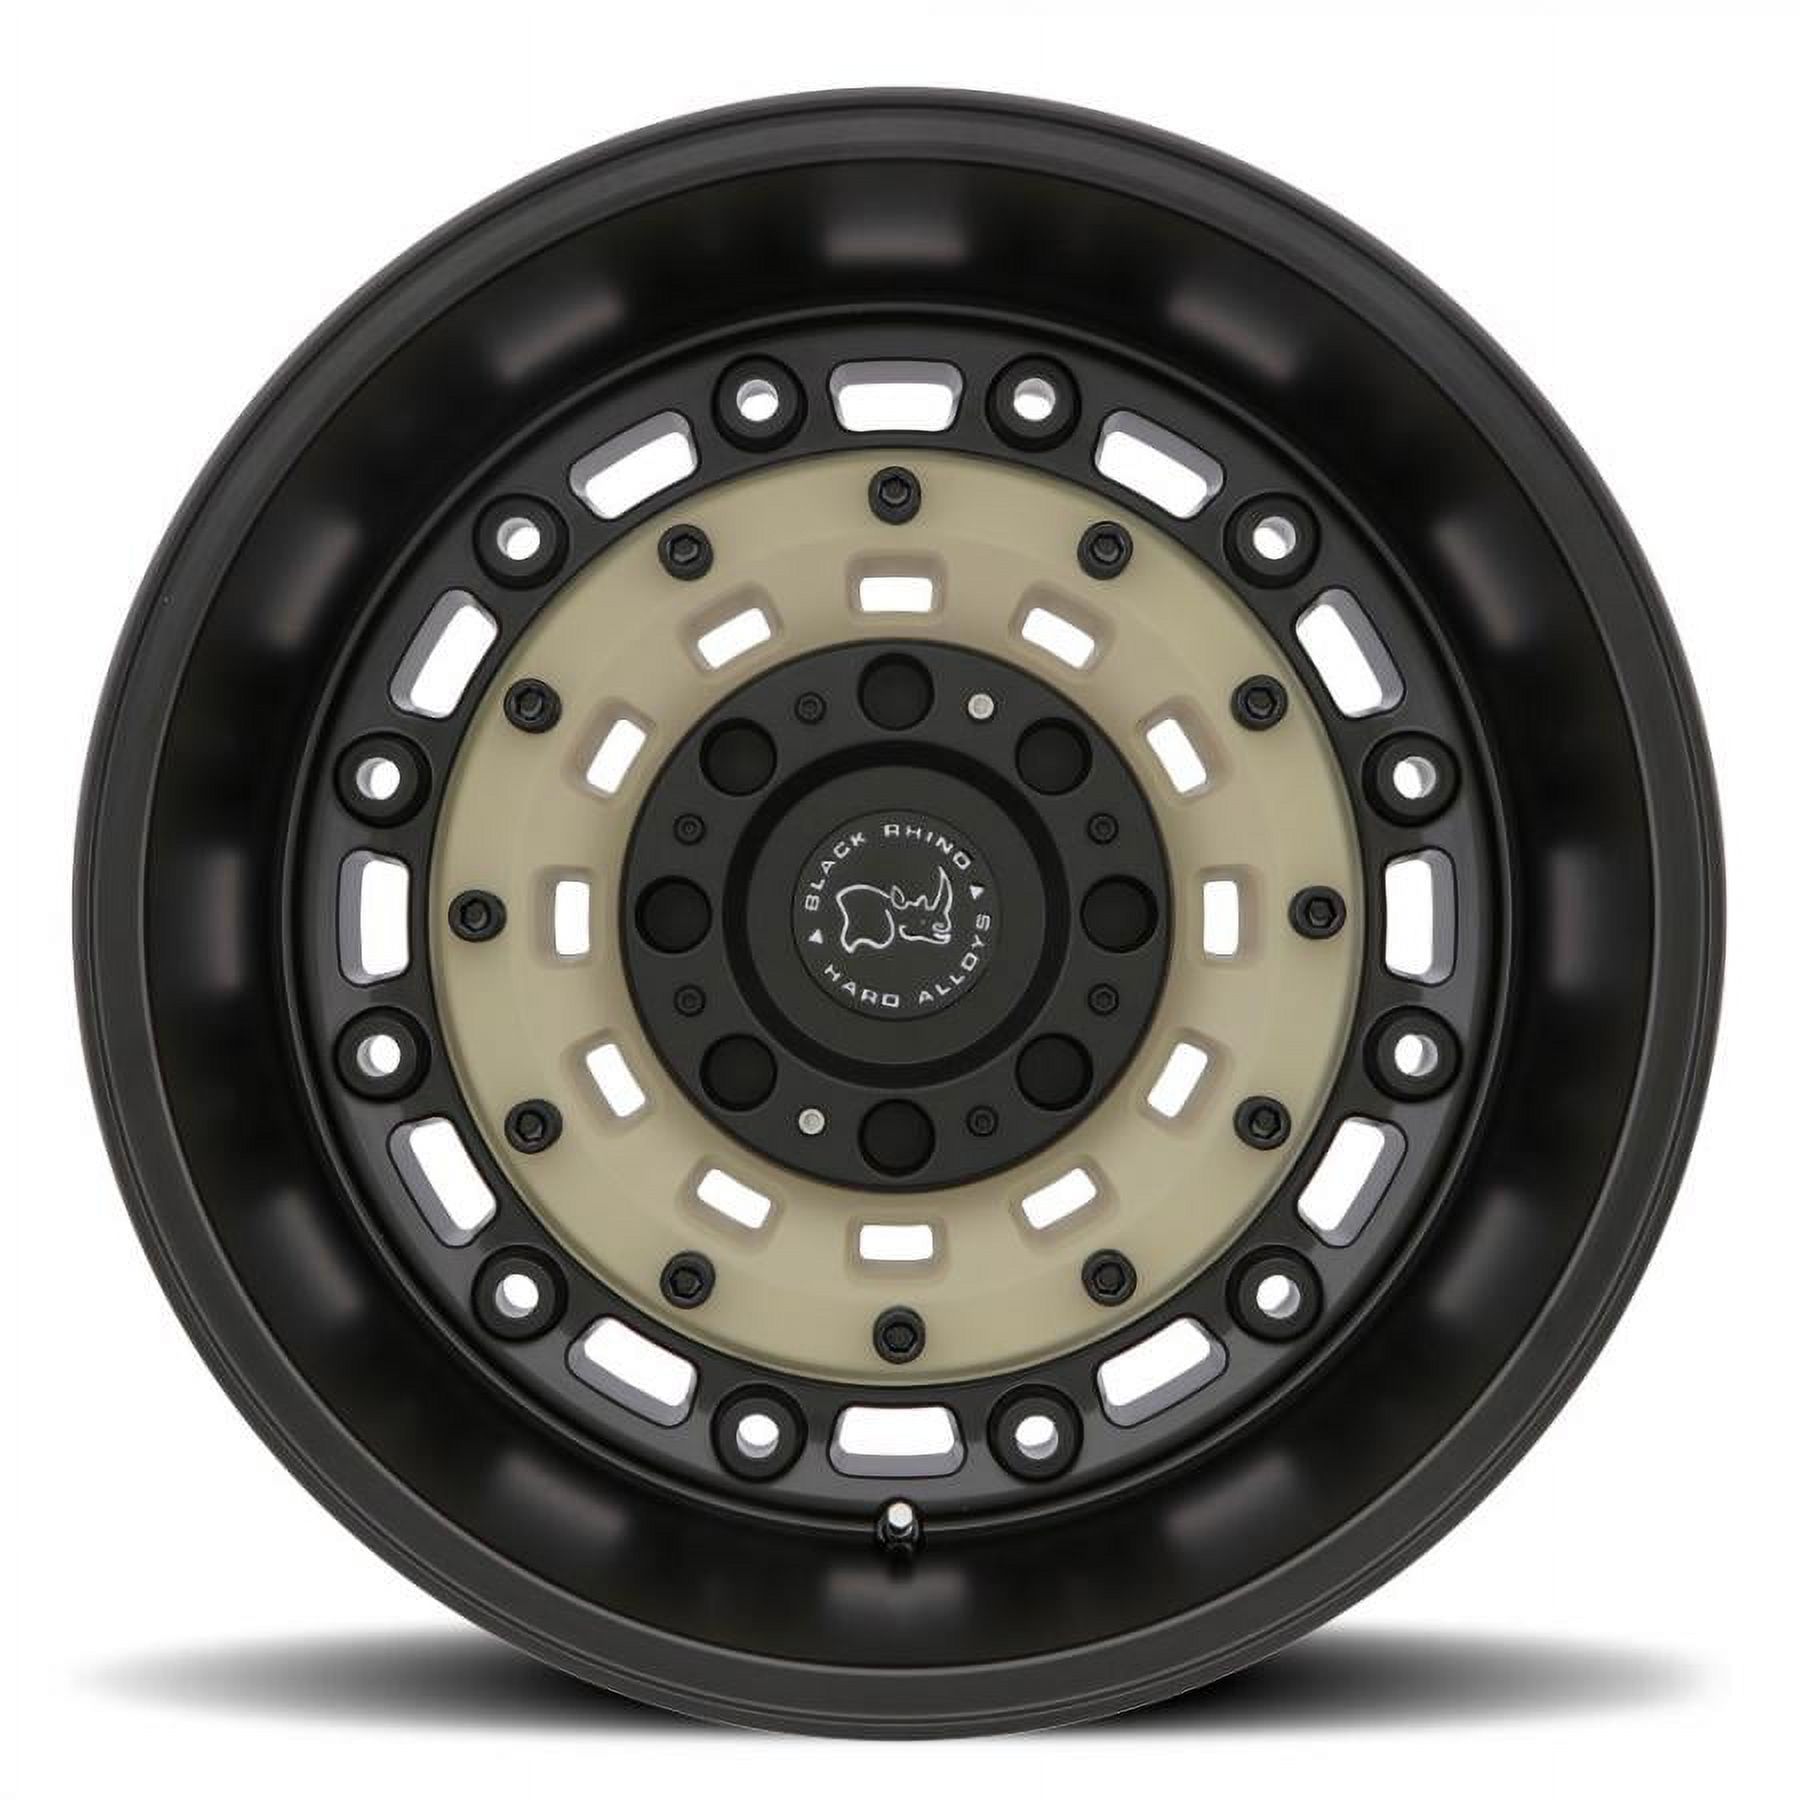 17" Black Black Rhino Arsenal Wheel by Black Rhino Wheels 1795ARS126140M12 - image 3 of 3